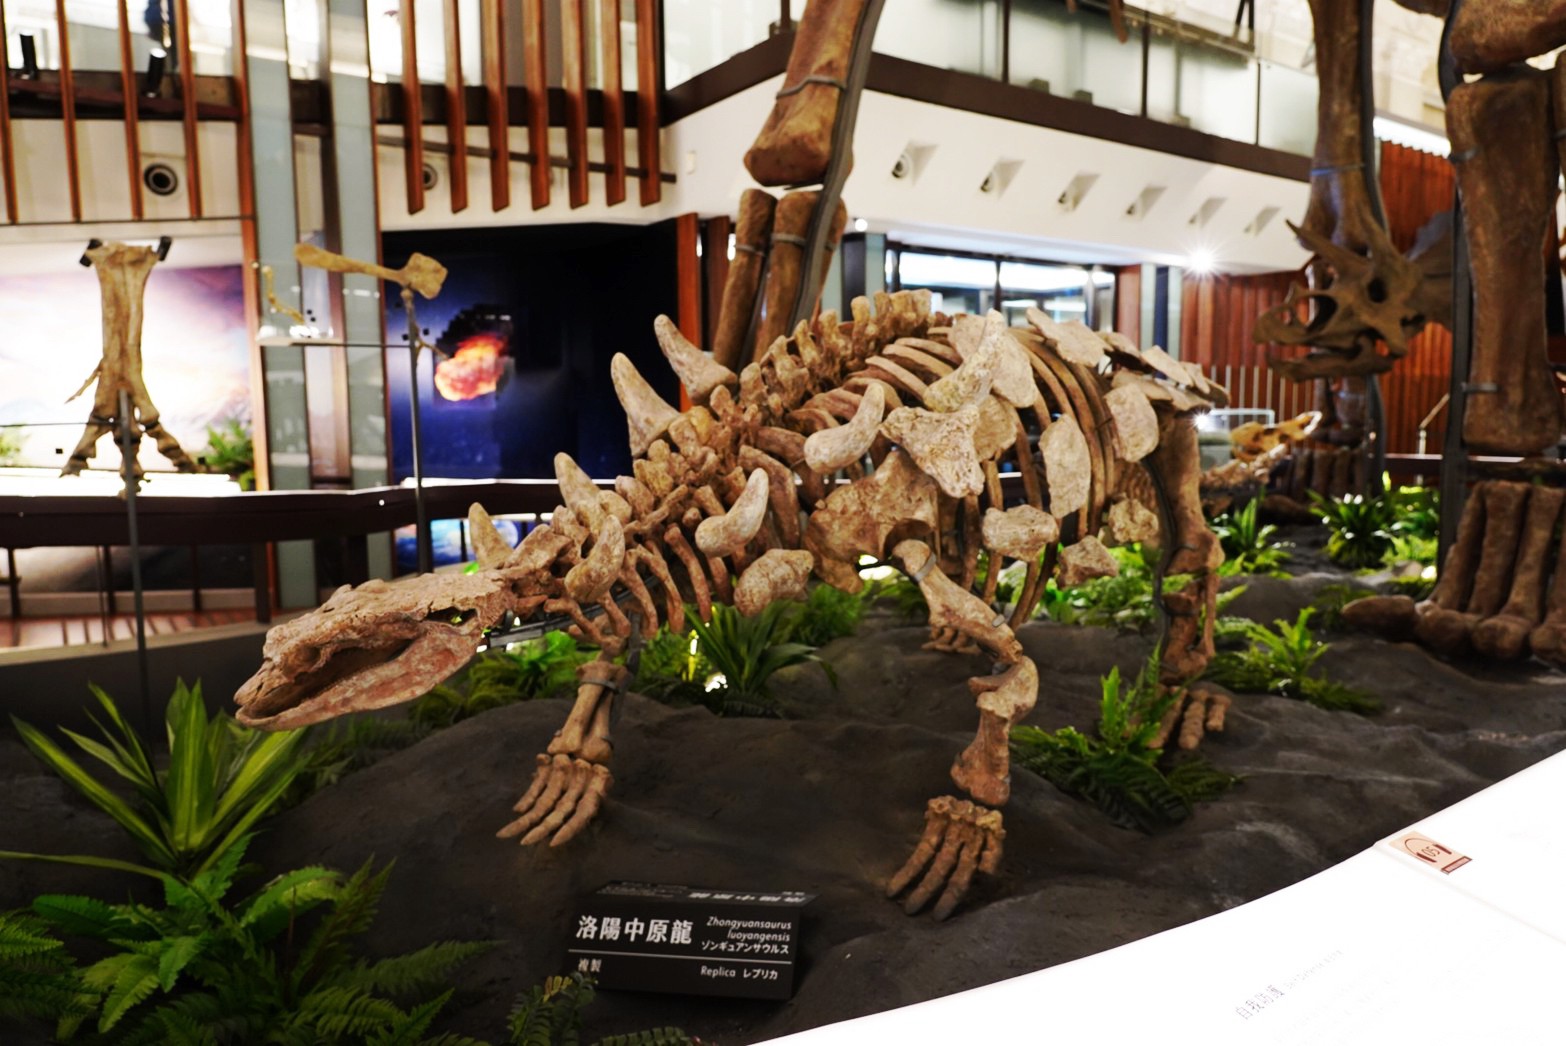 台北景點,親子景點,恐龍博物館, 土銀博物館,台灣博物館,恐龍,恐龍餐廳,228公園